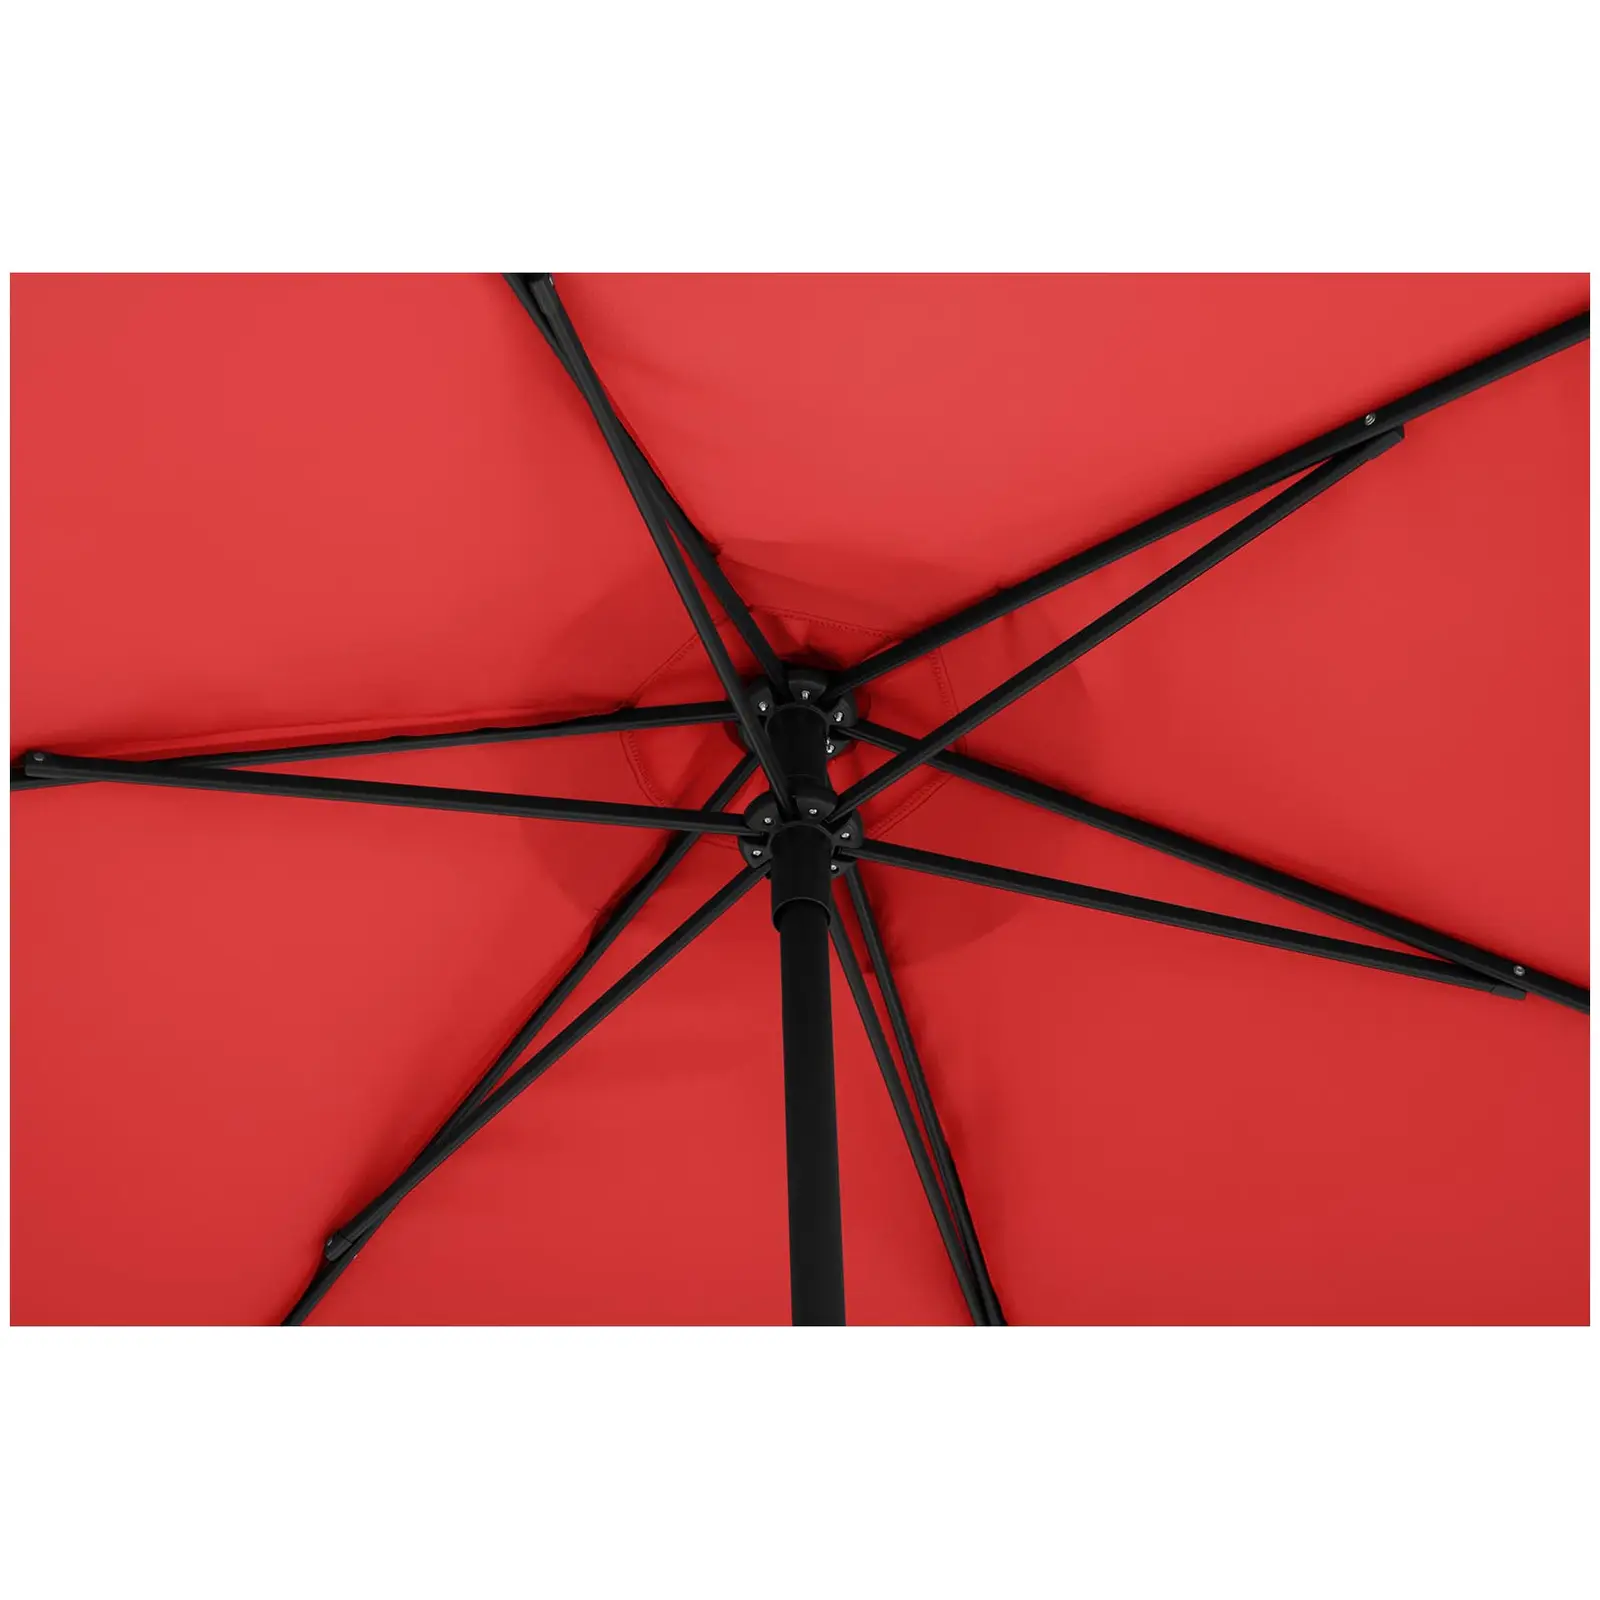 Sonnenschirm groß - rot - sechseckig - Ø 270 cm